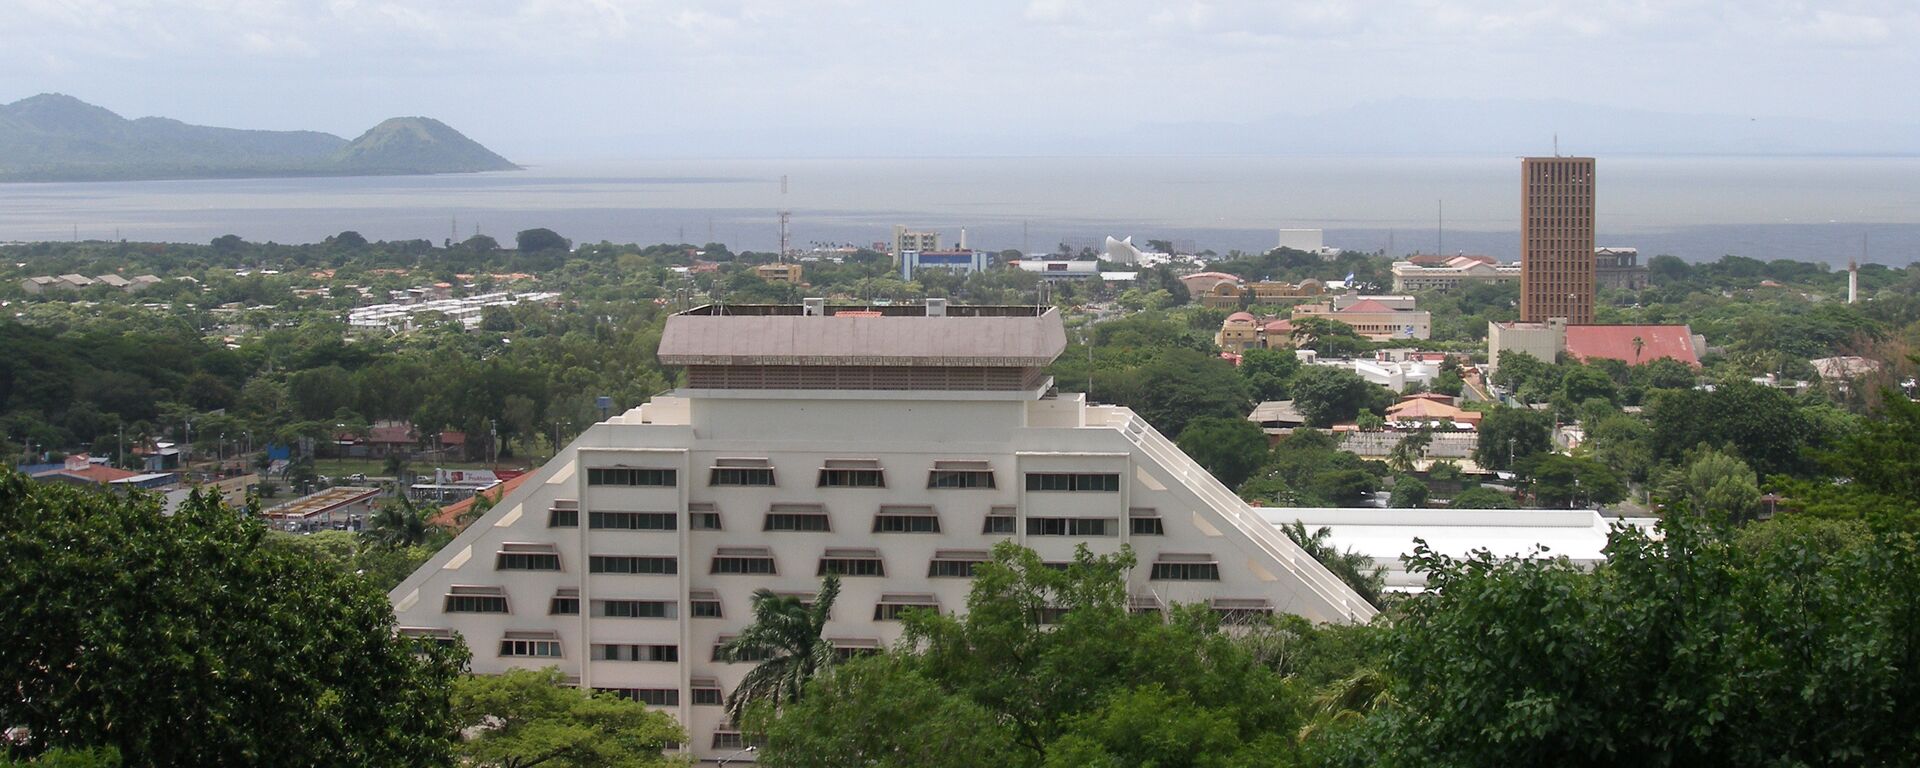 Capital de Nicaragua,  Managua - Sputnik Mundo, 1920, 23.11.2021